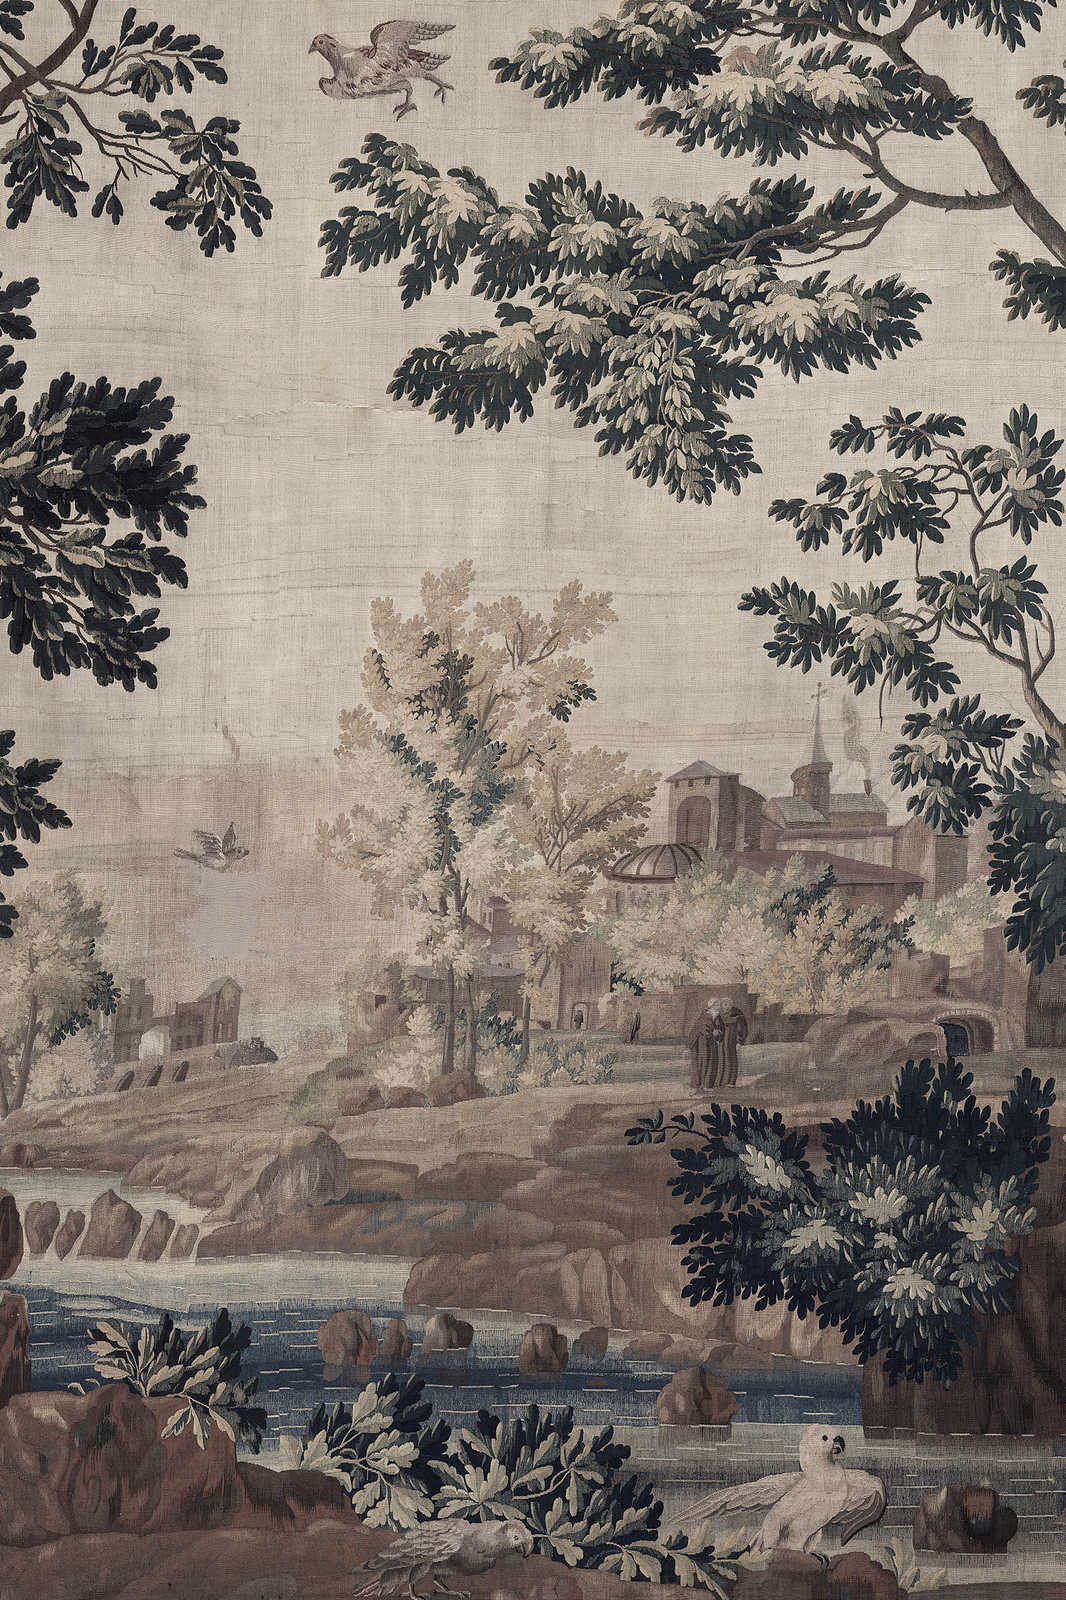             Gobelin Gallery 1 - Paysage toile tapisserie historique - 1,20 m x 0,80 m
        